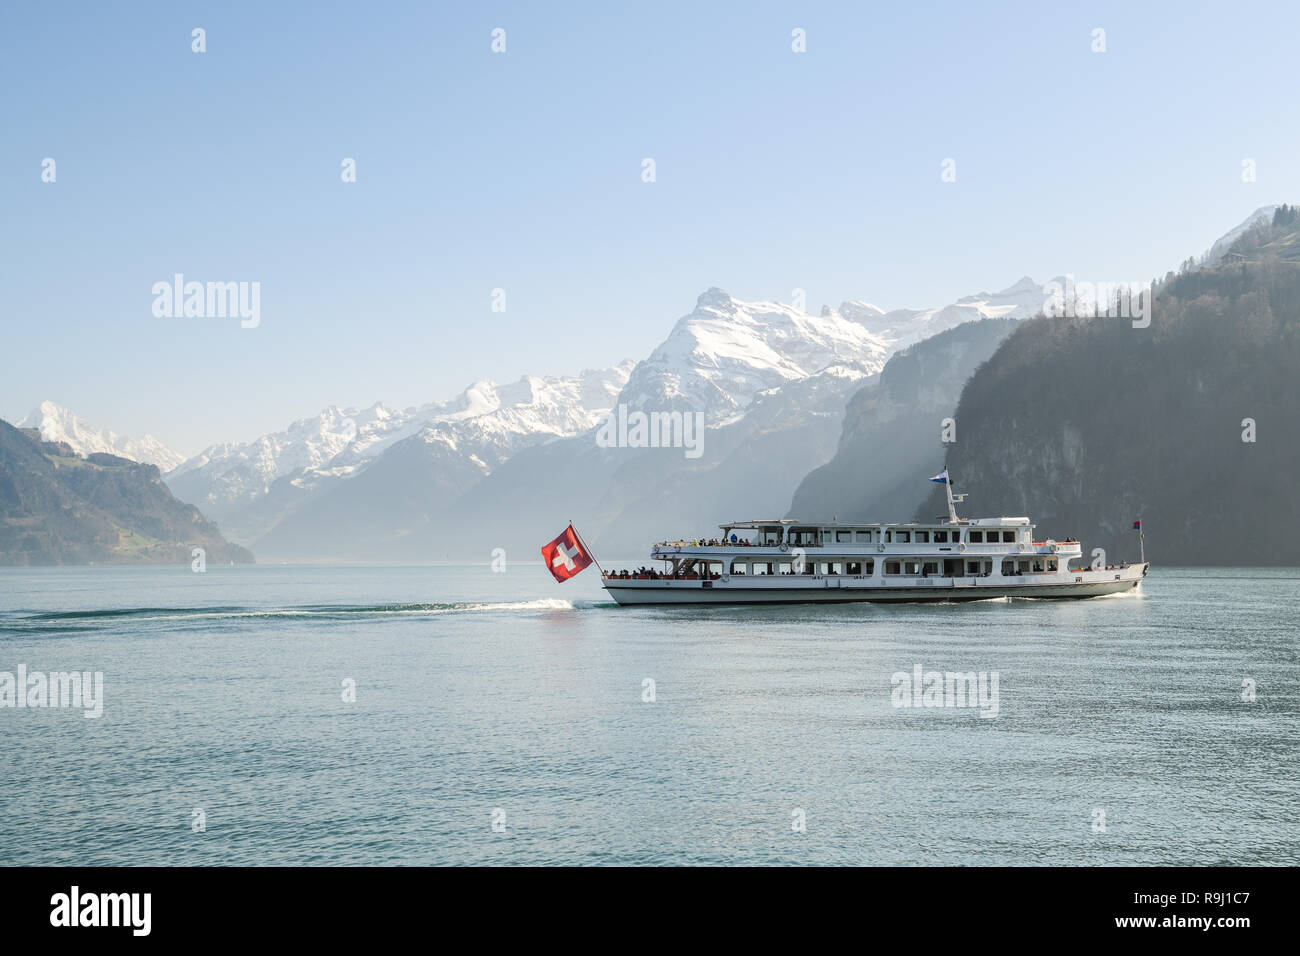 BRUNNEN, Svizzera - Aprile 7, 2018: nave da crociera con i turisti sul Lago di Lucerna vicino a Brunnen in Svizzera durante la primavera 2018 Foto Stock